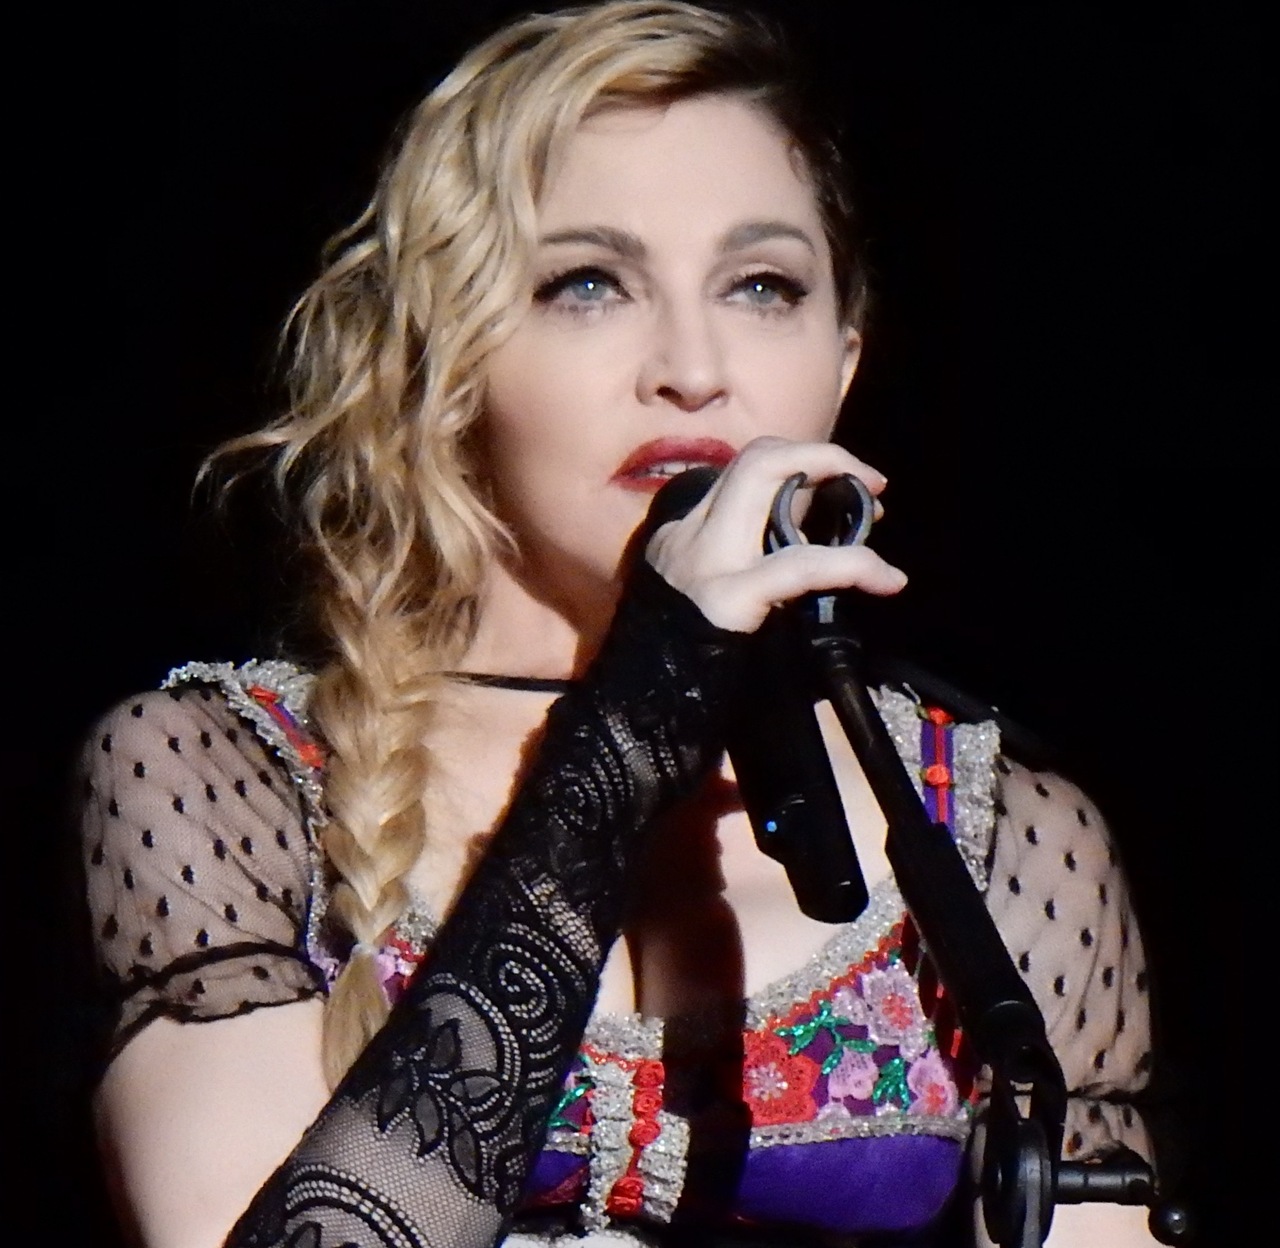 Coronavirus, Madonna censurata su Instagram: “Il vaccino c’è ma lo nascondono”